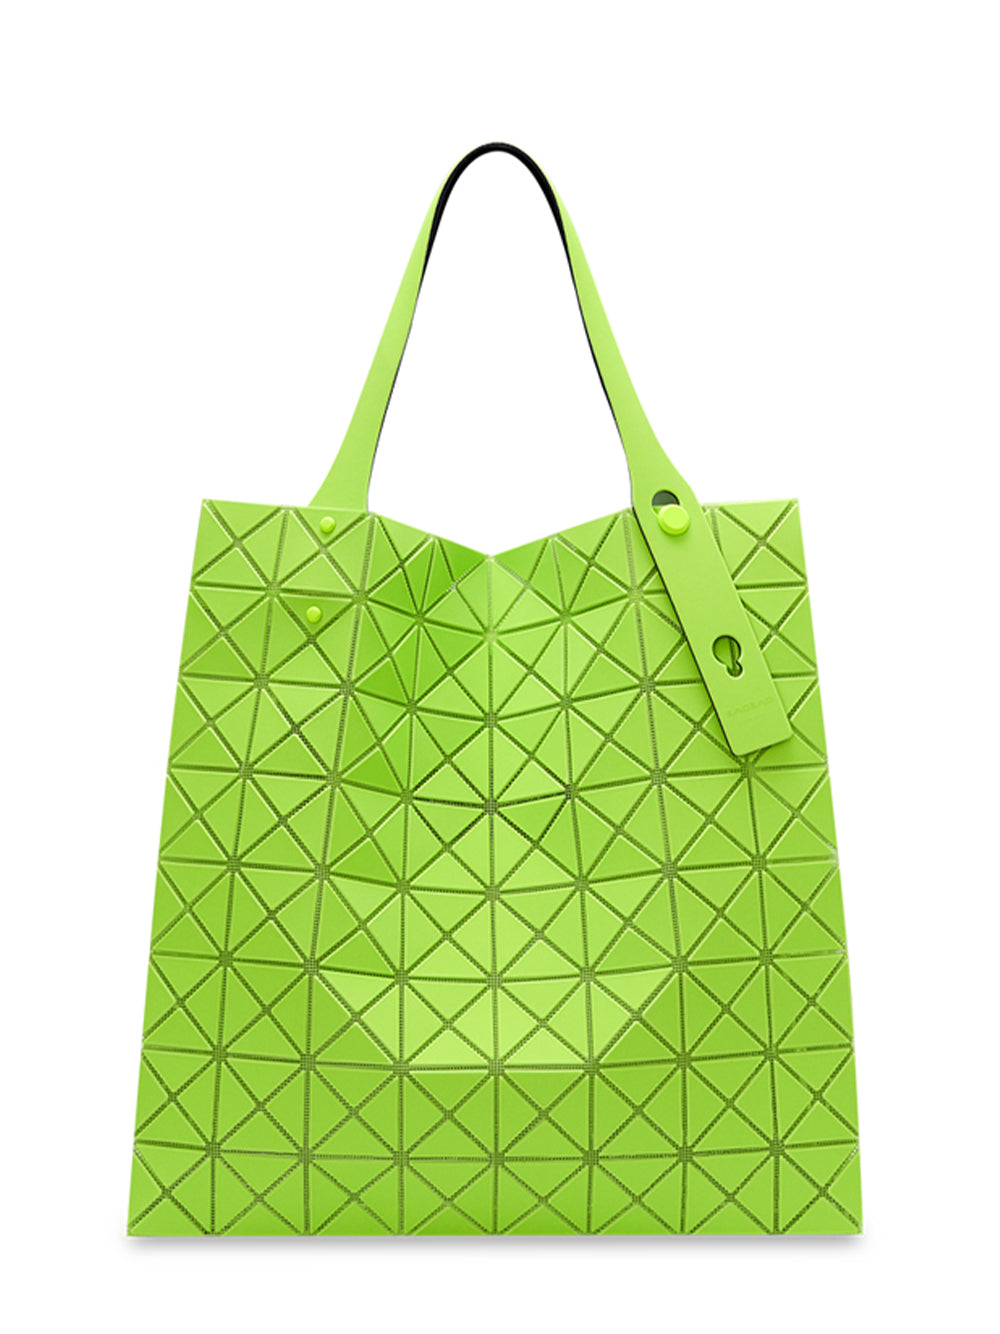 PRISM PLUS Handbag (Large) (Yellow Green)